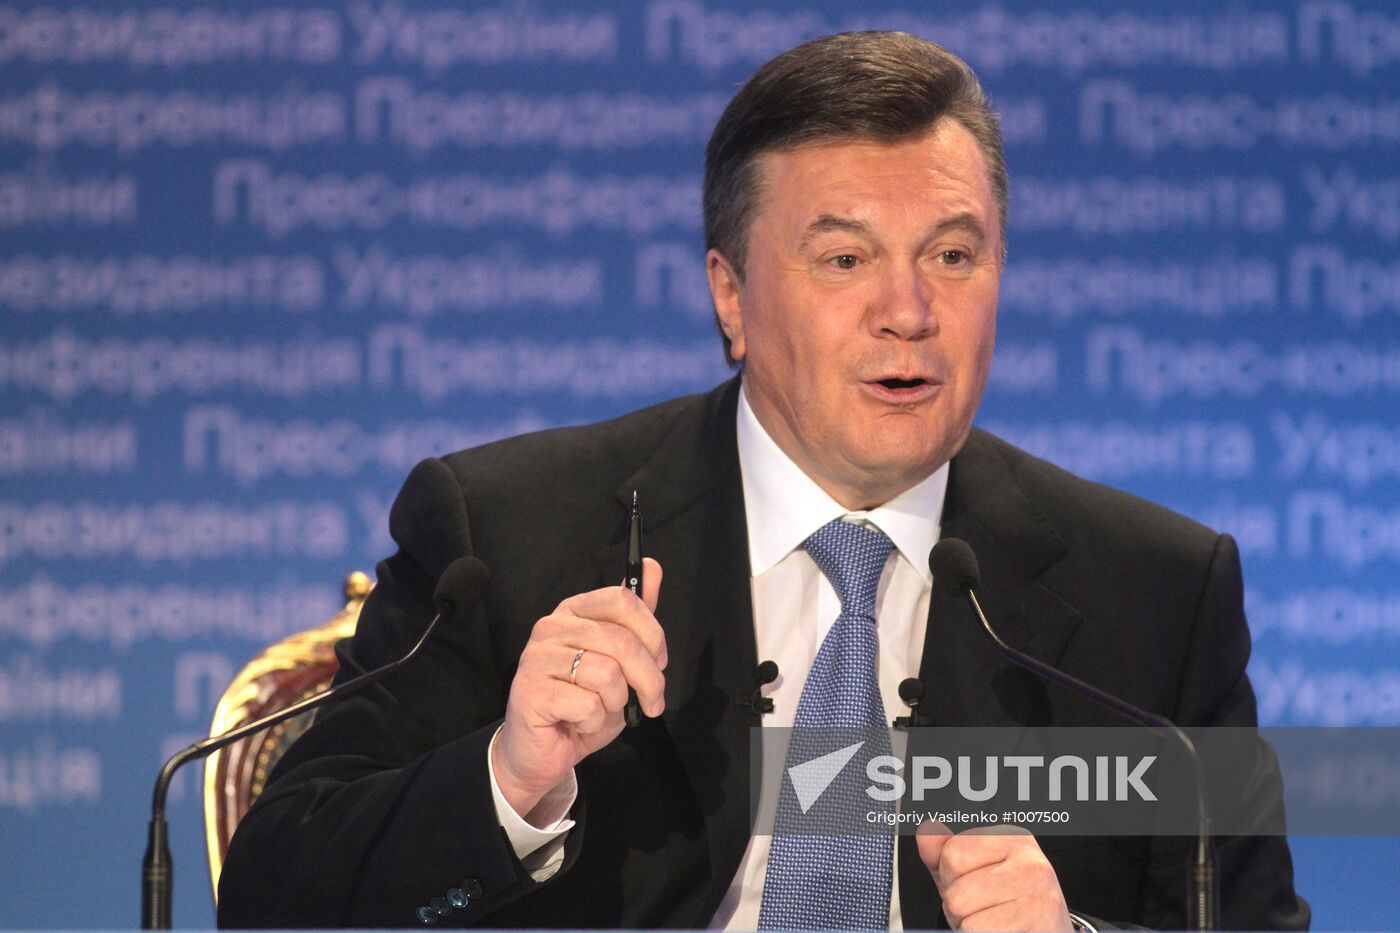 Viktor Yanukovych holds concluding news conference